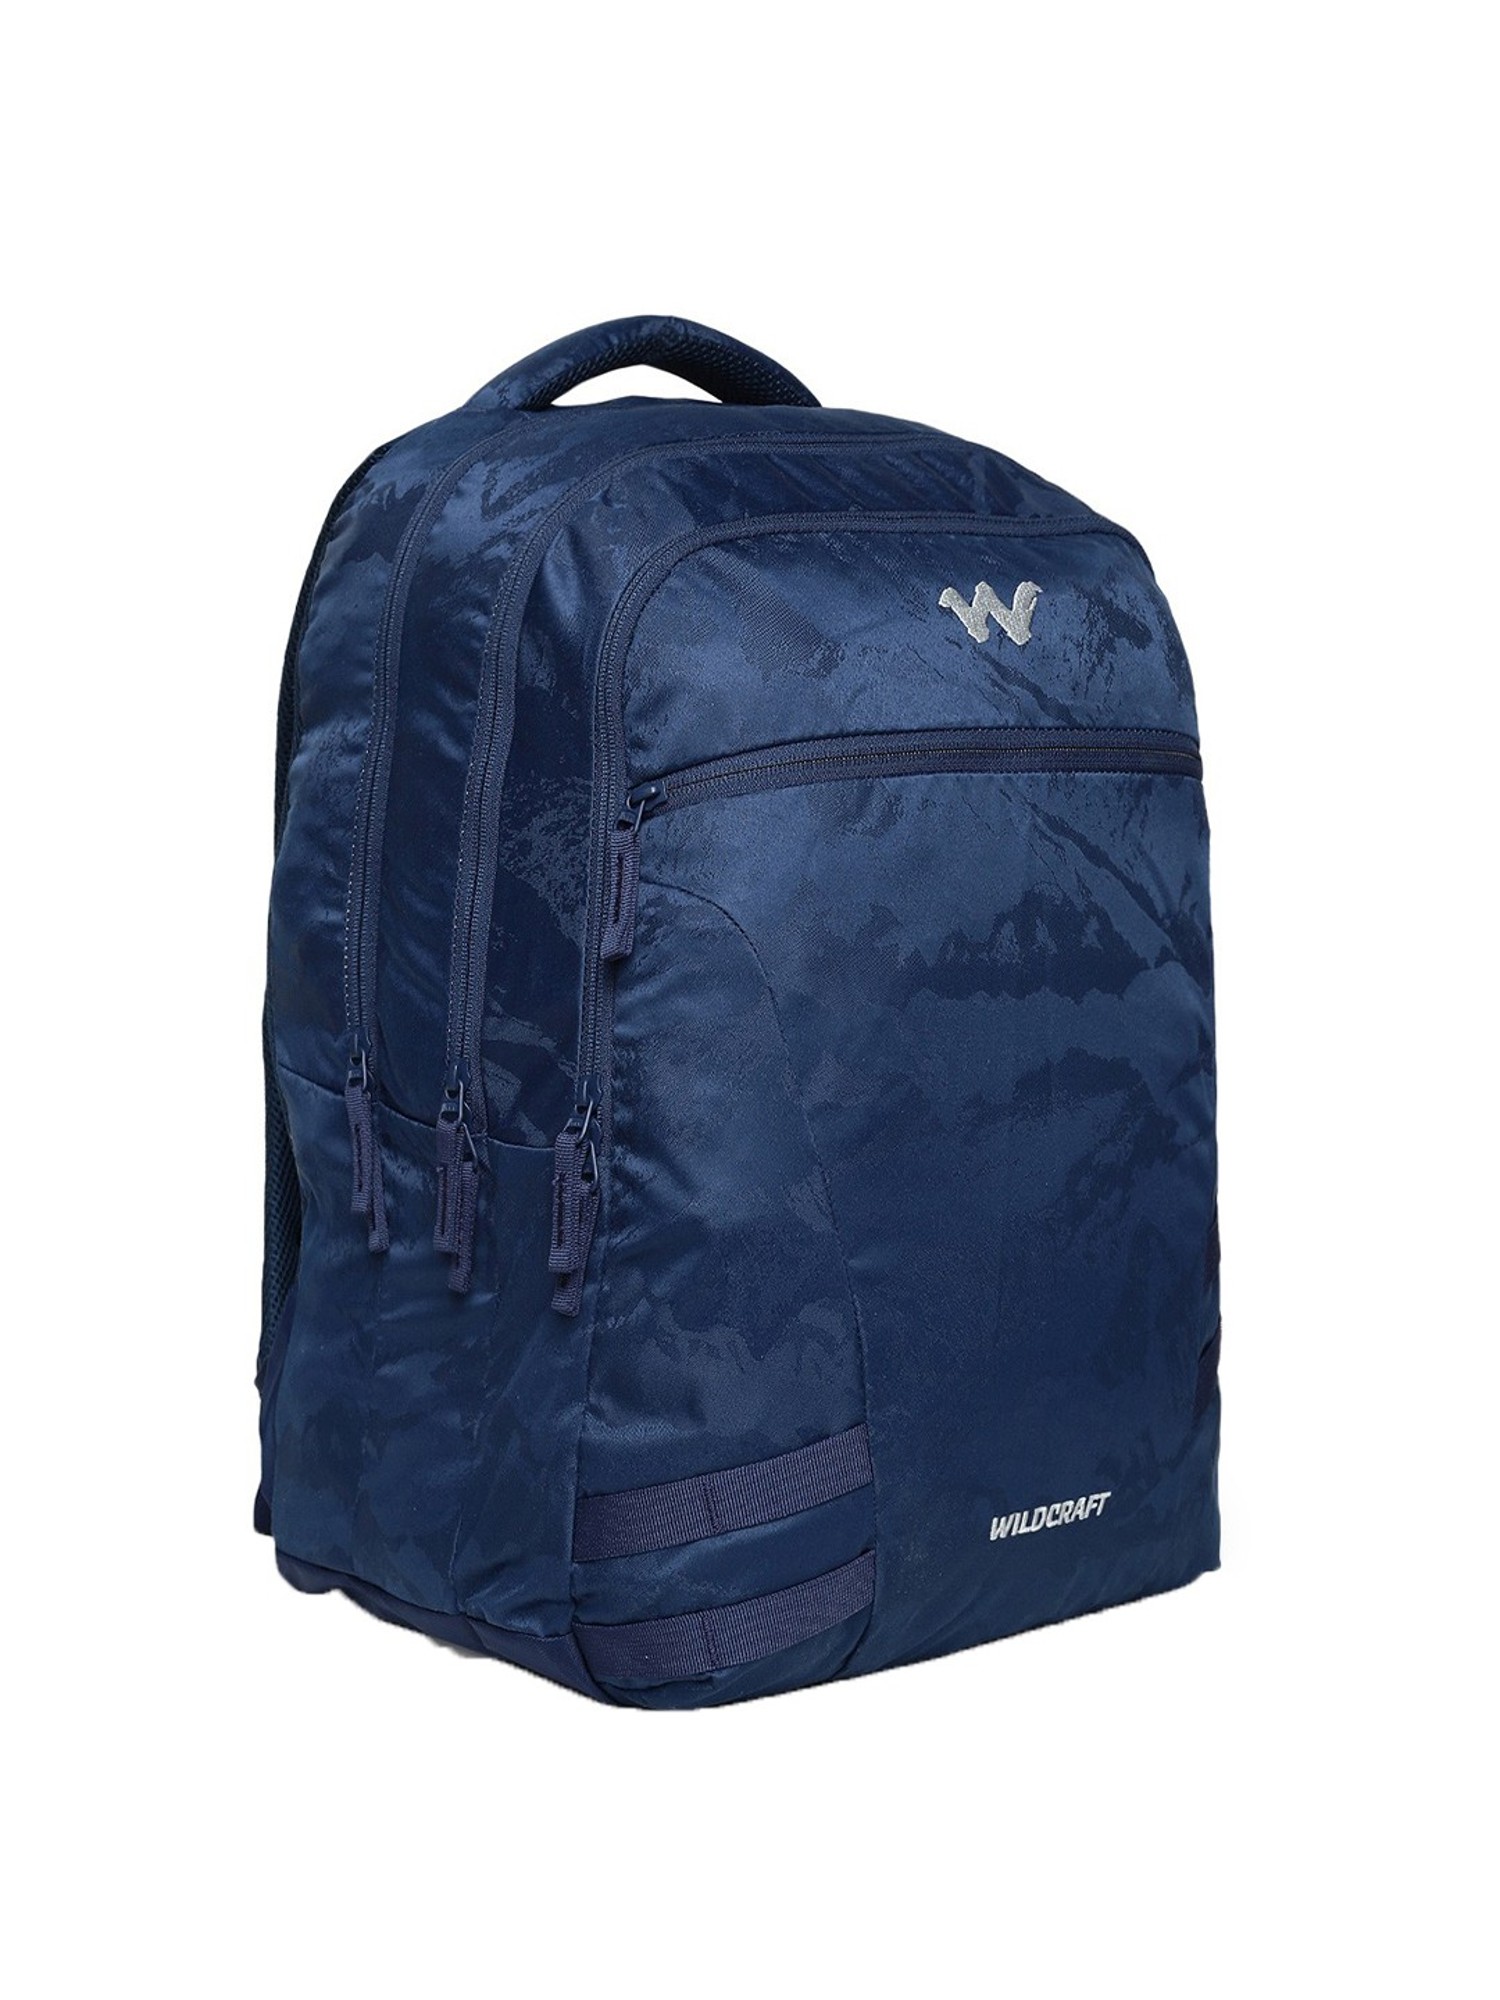 Buy Women Blue Solid Backpack online | Looksgud.in